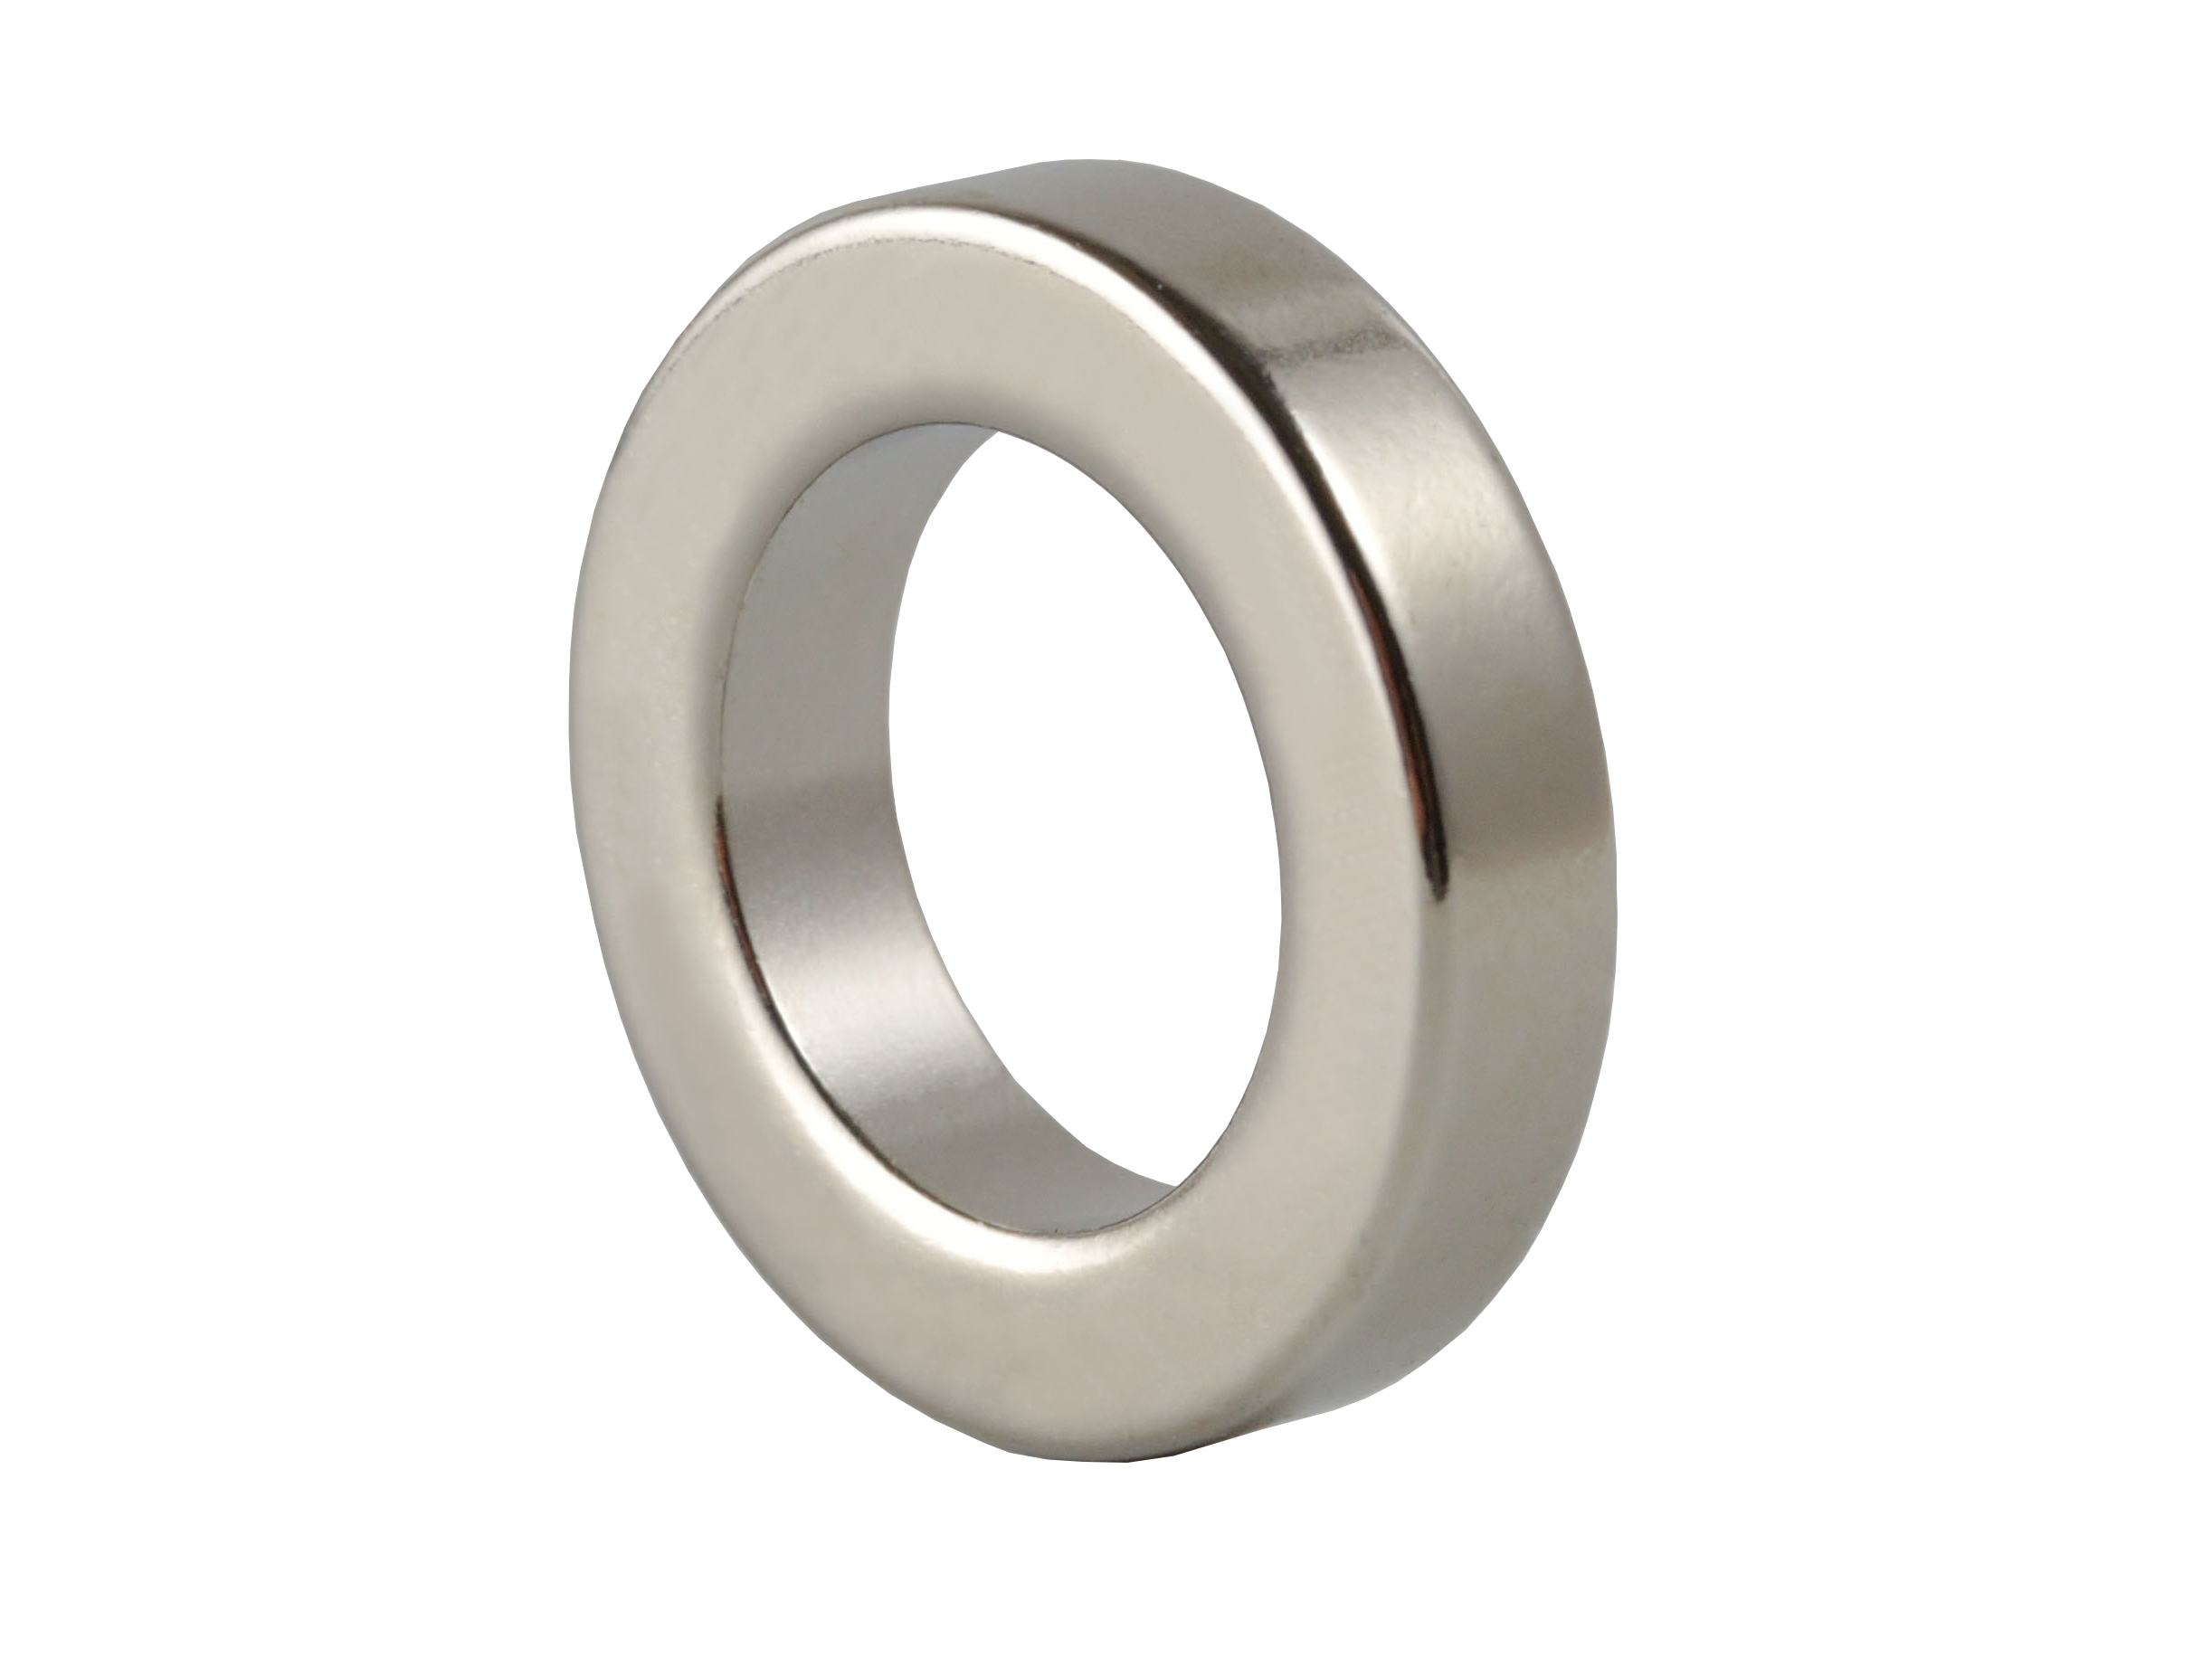 Ring‑Shaped Neodymium Magnet NOR197